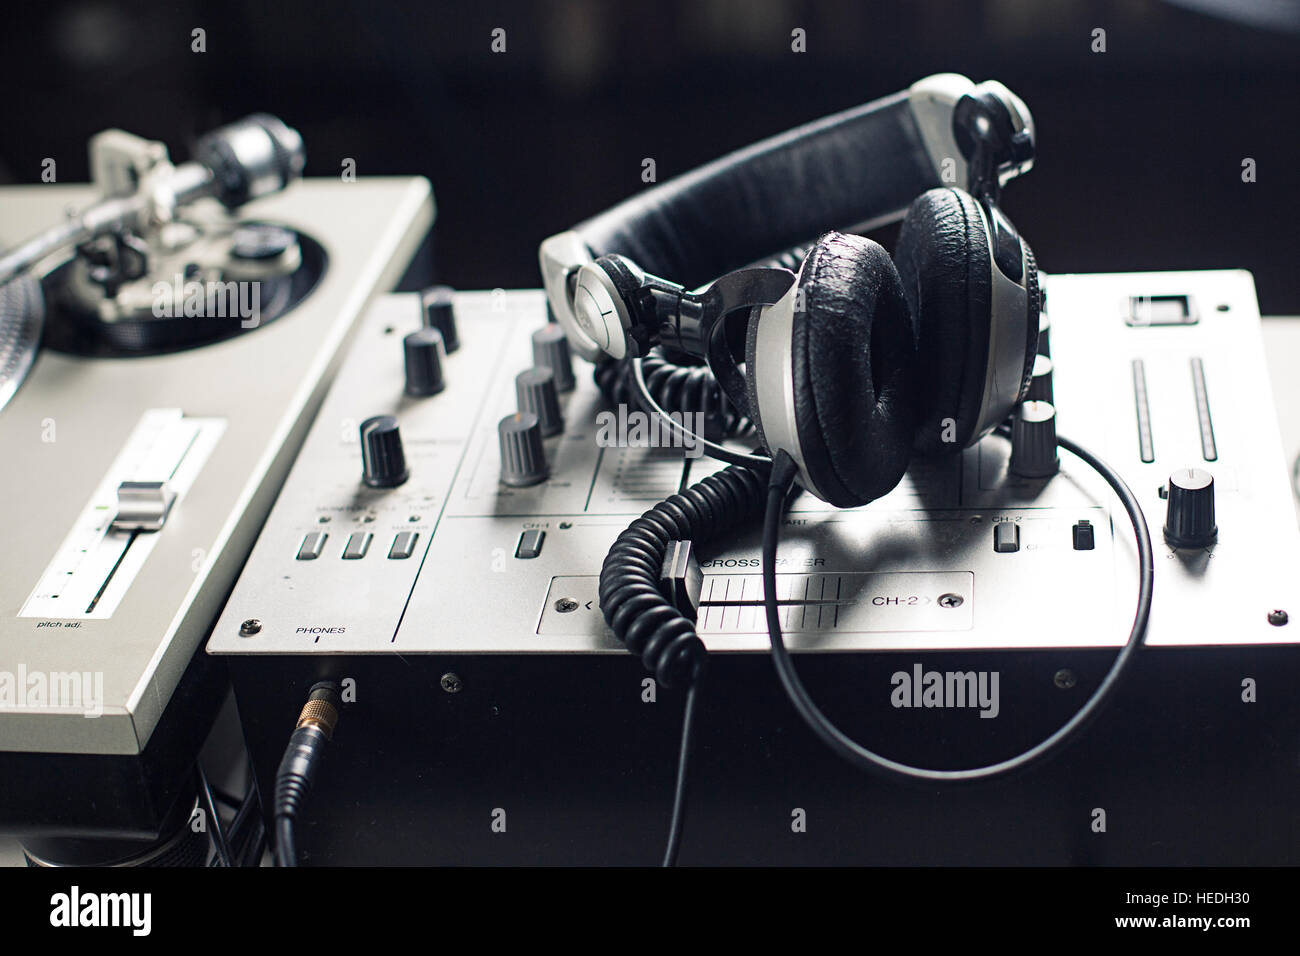 DJ mixer Stock Photo